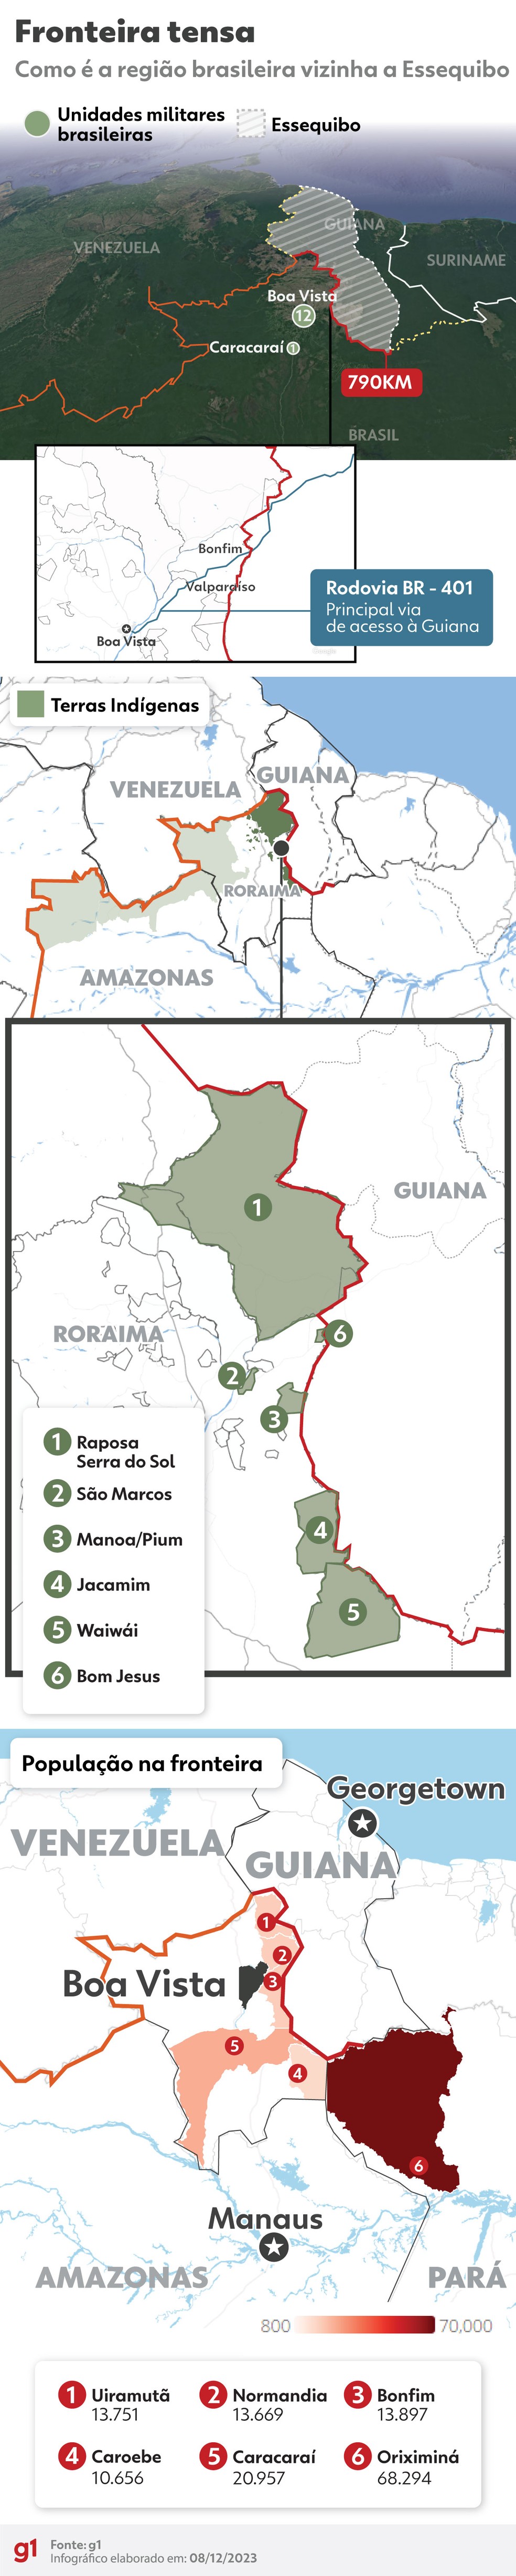 Infográfico mostra como é a fronteira entre o Brasil e Essequibo, região da Guiana que a Venezuela quer anexar. — Foto: Editoria de Arte/g1